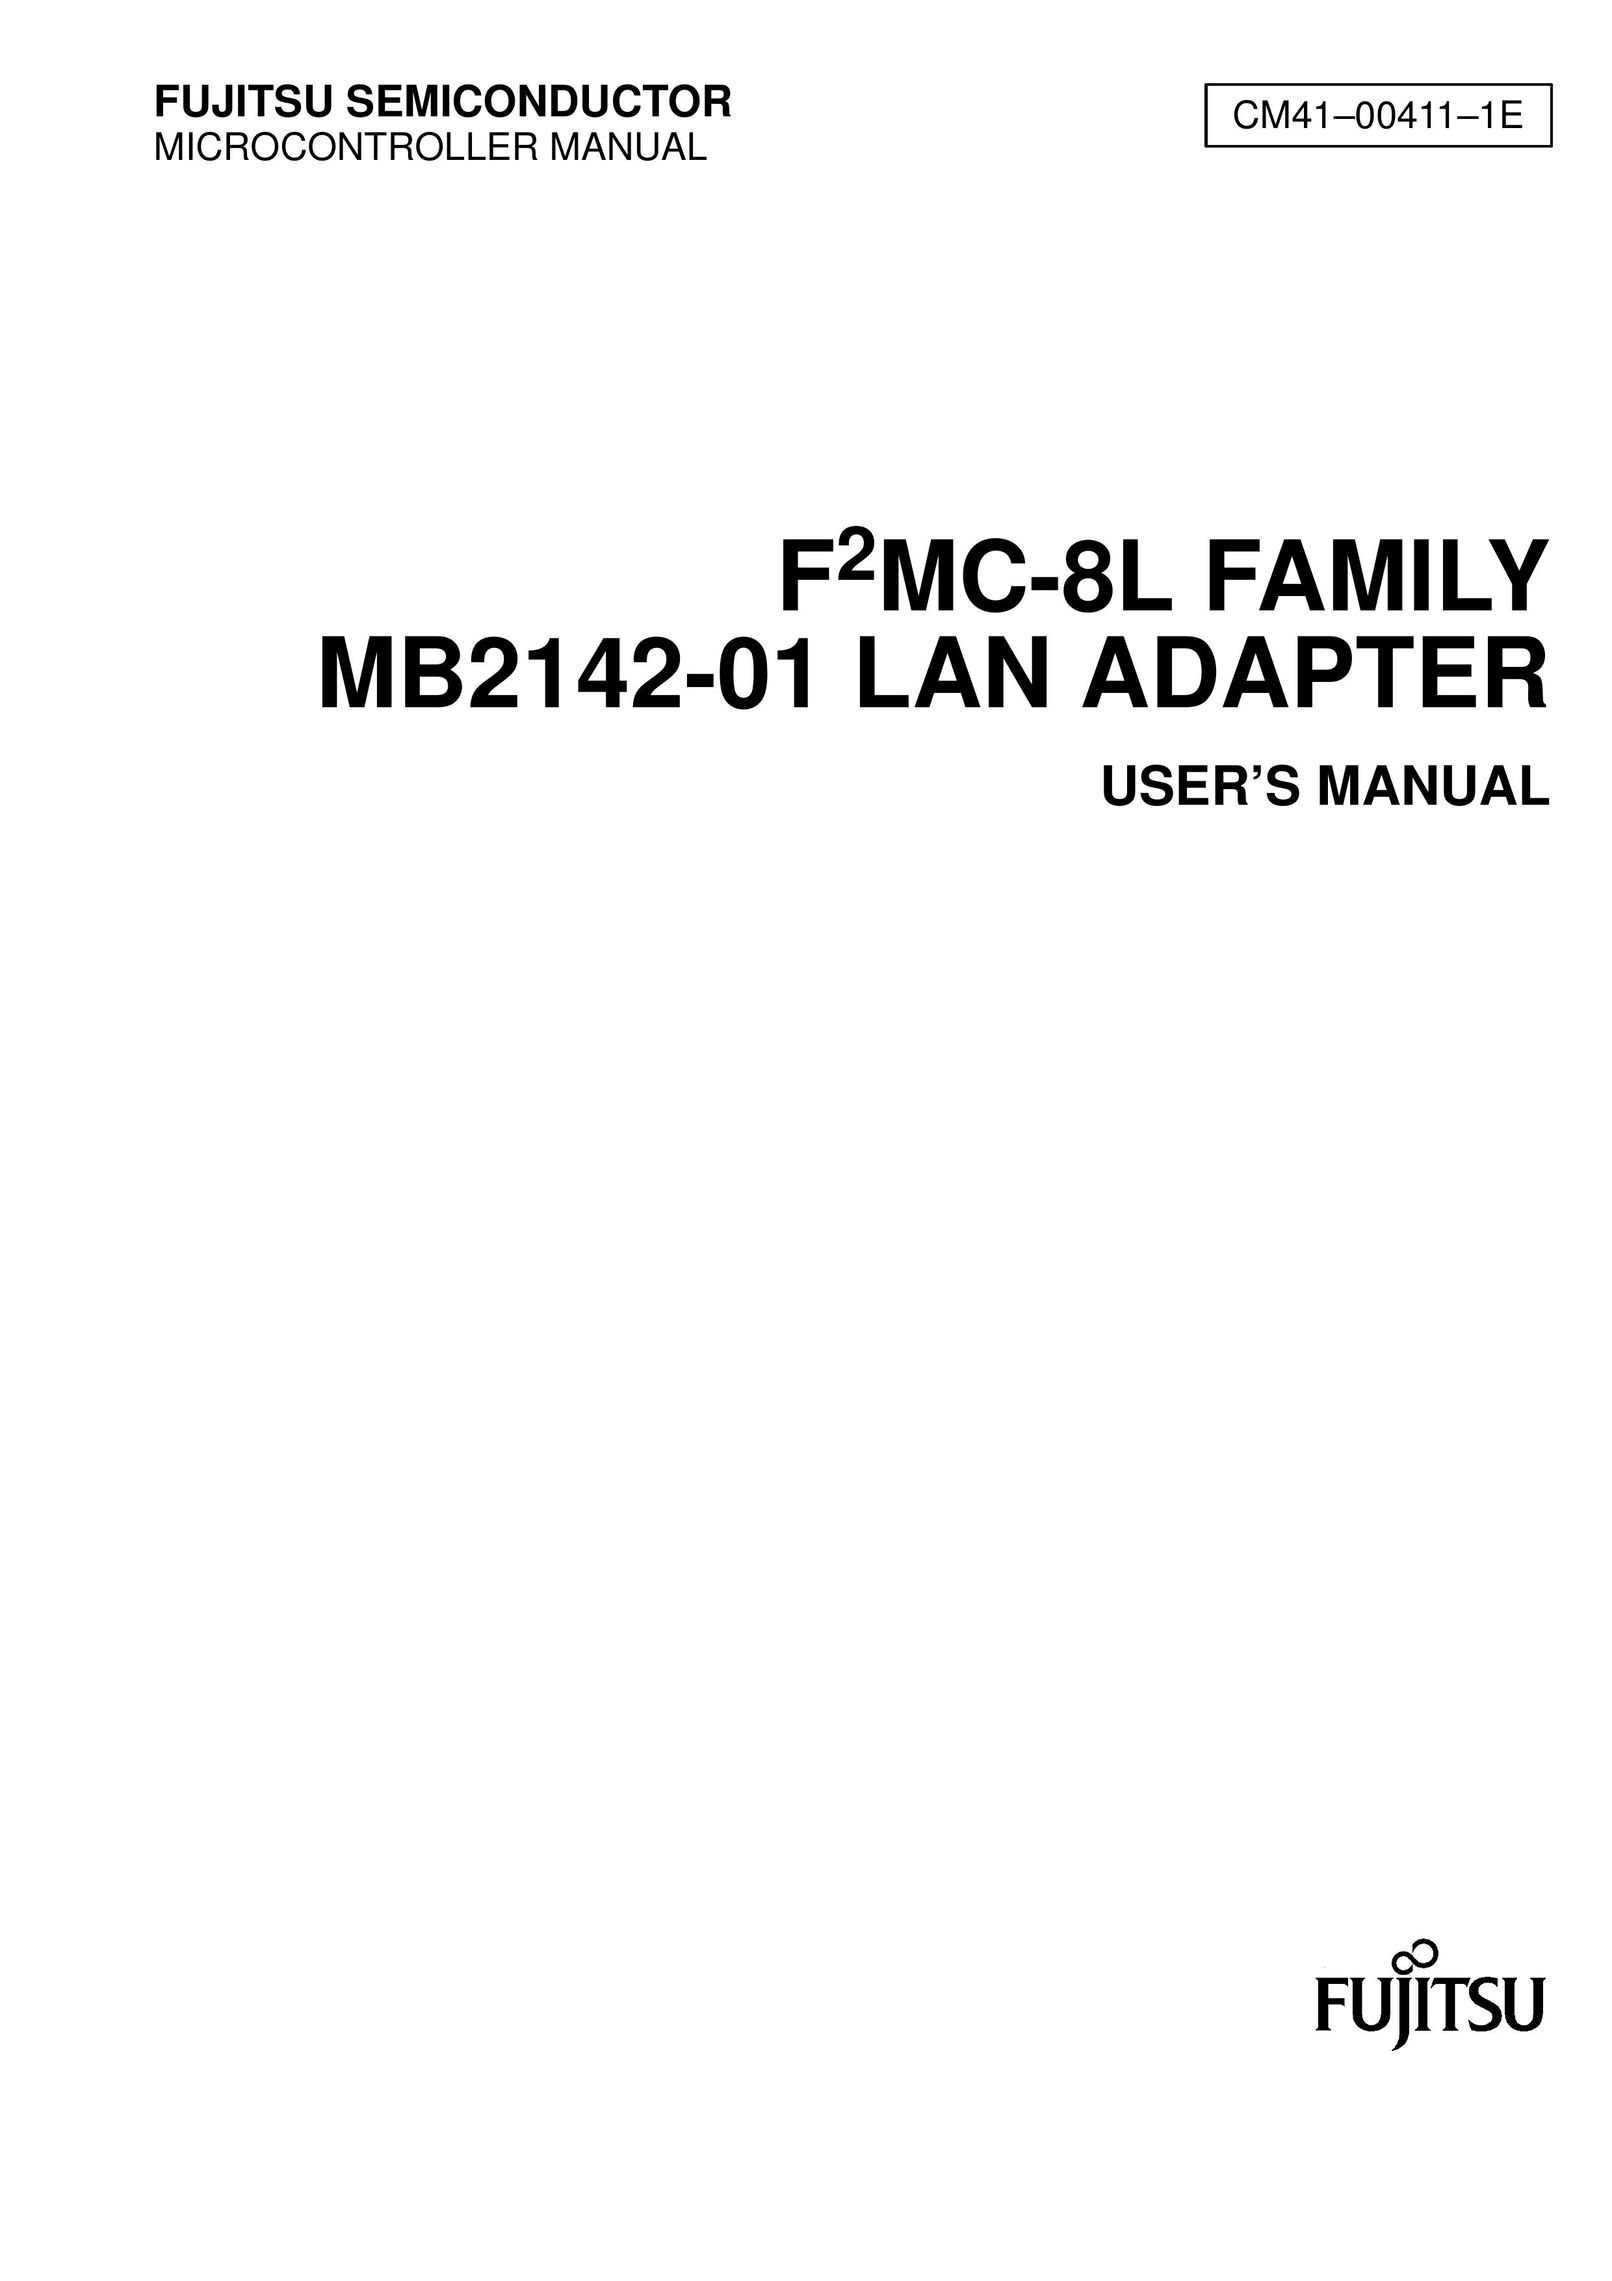 Fujitsu CM41004111E MP3 Player Accessories User Manual